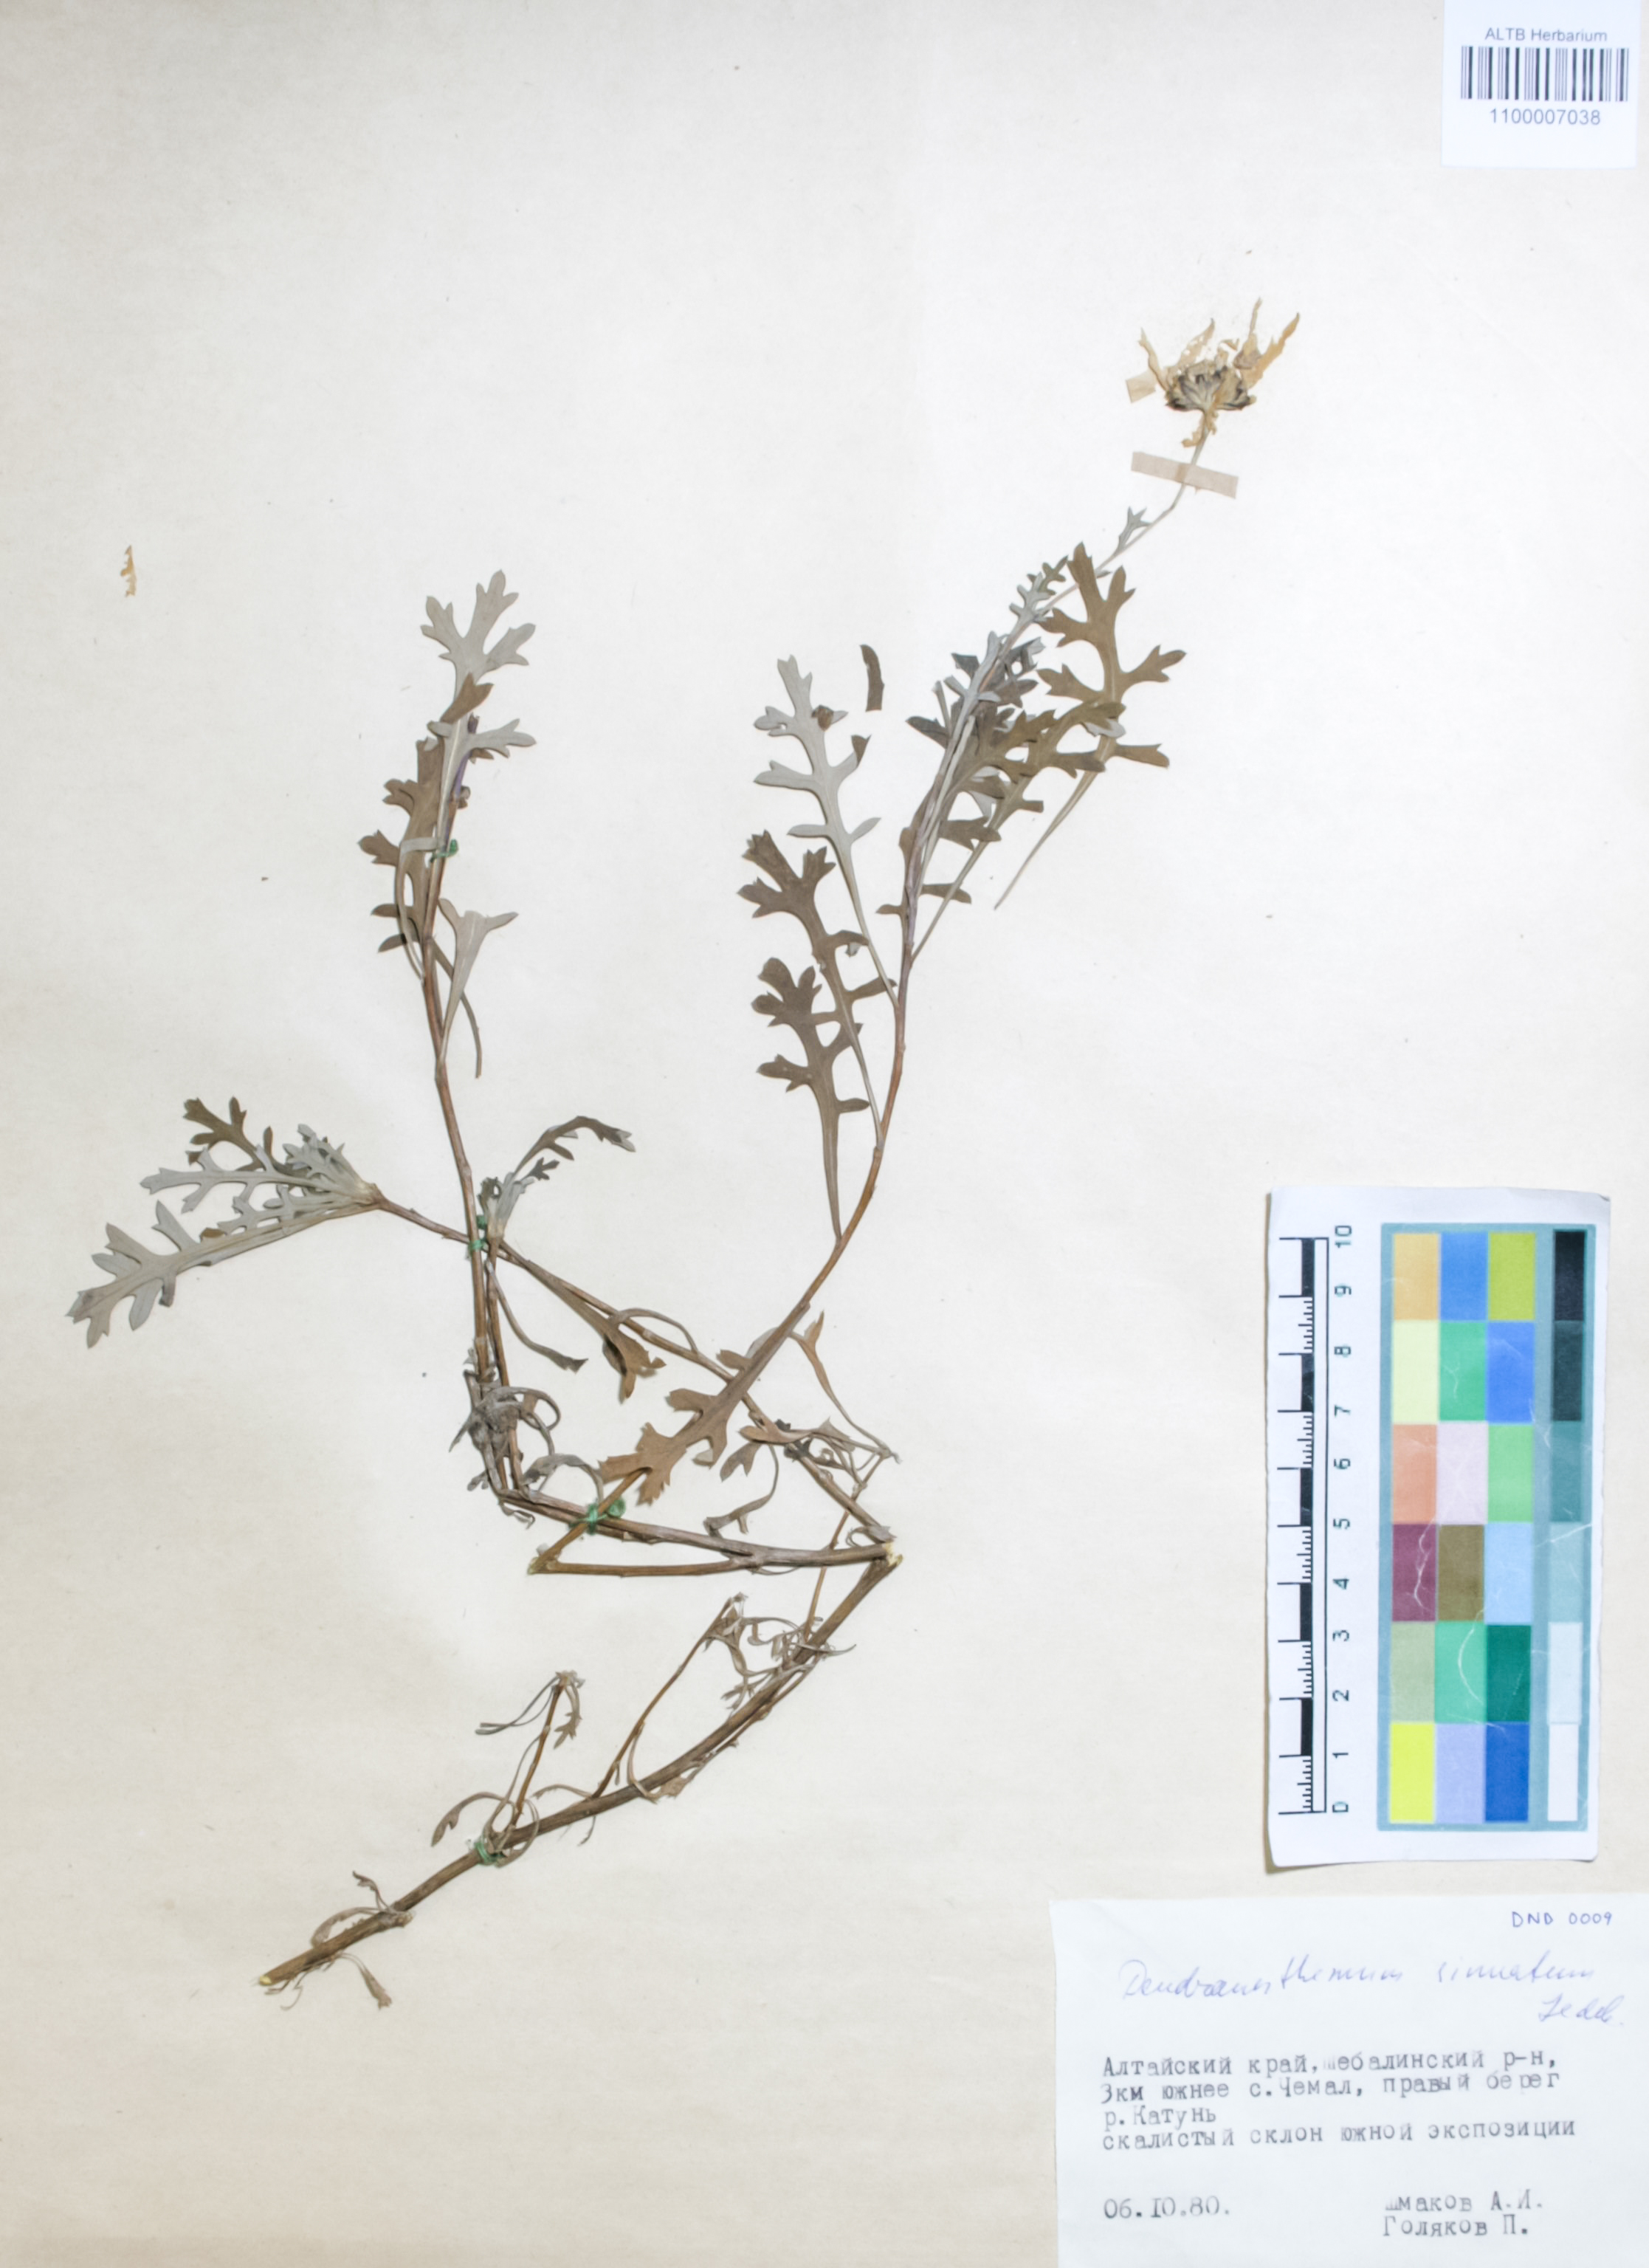 Asteraceae,Dendranthema sinuatum (Ledeb.) Tzvel.